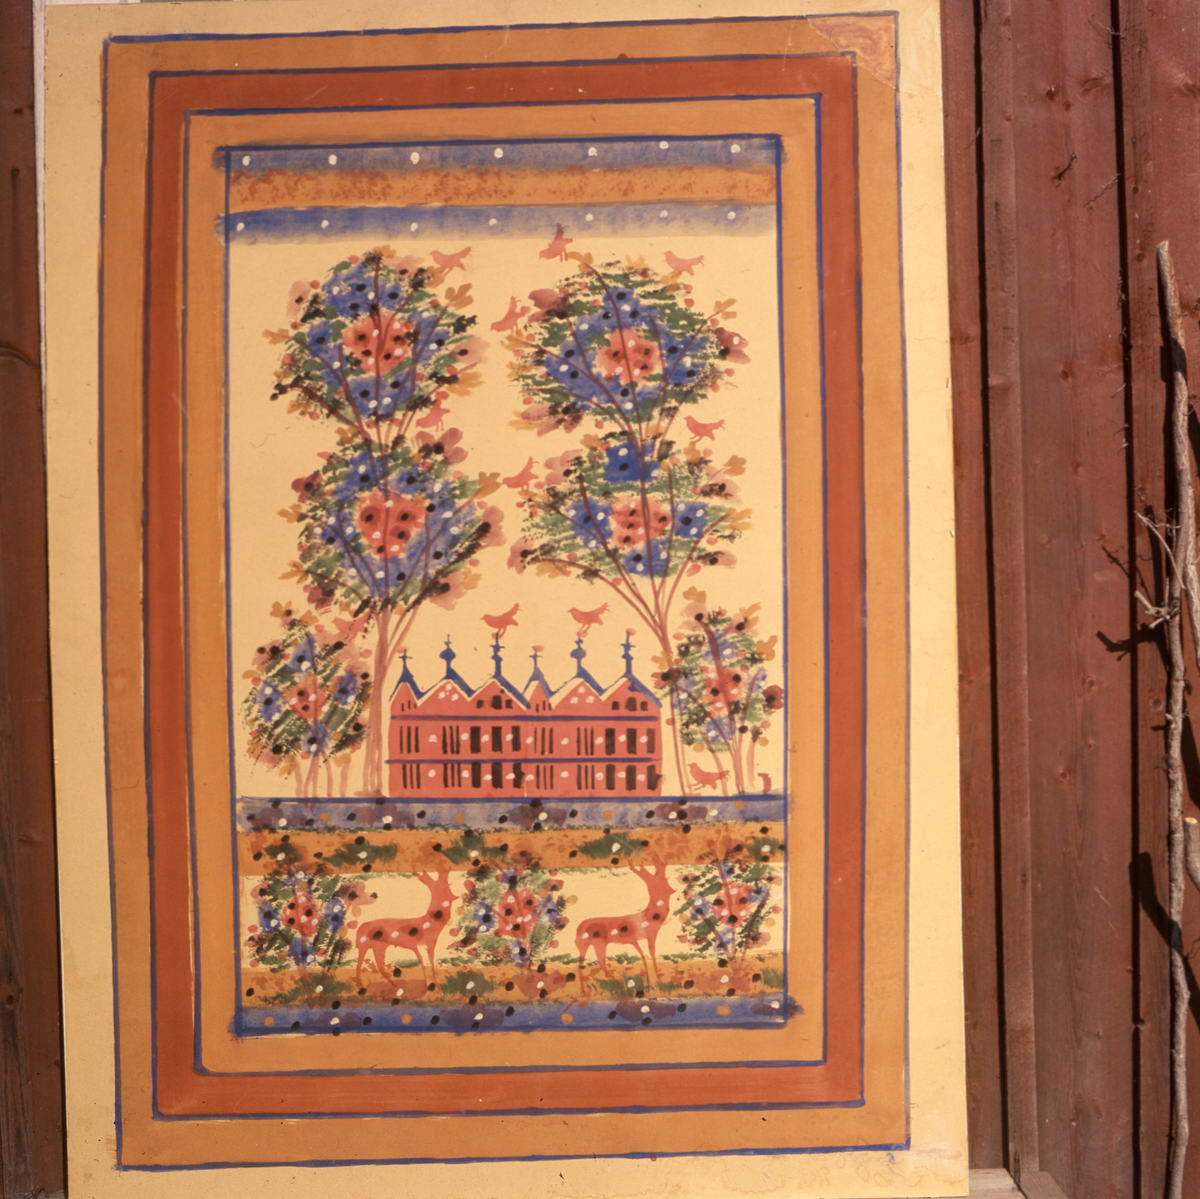 En målad rullgardin föreställande ett hus omgärdat av blommor och hjortar.